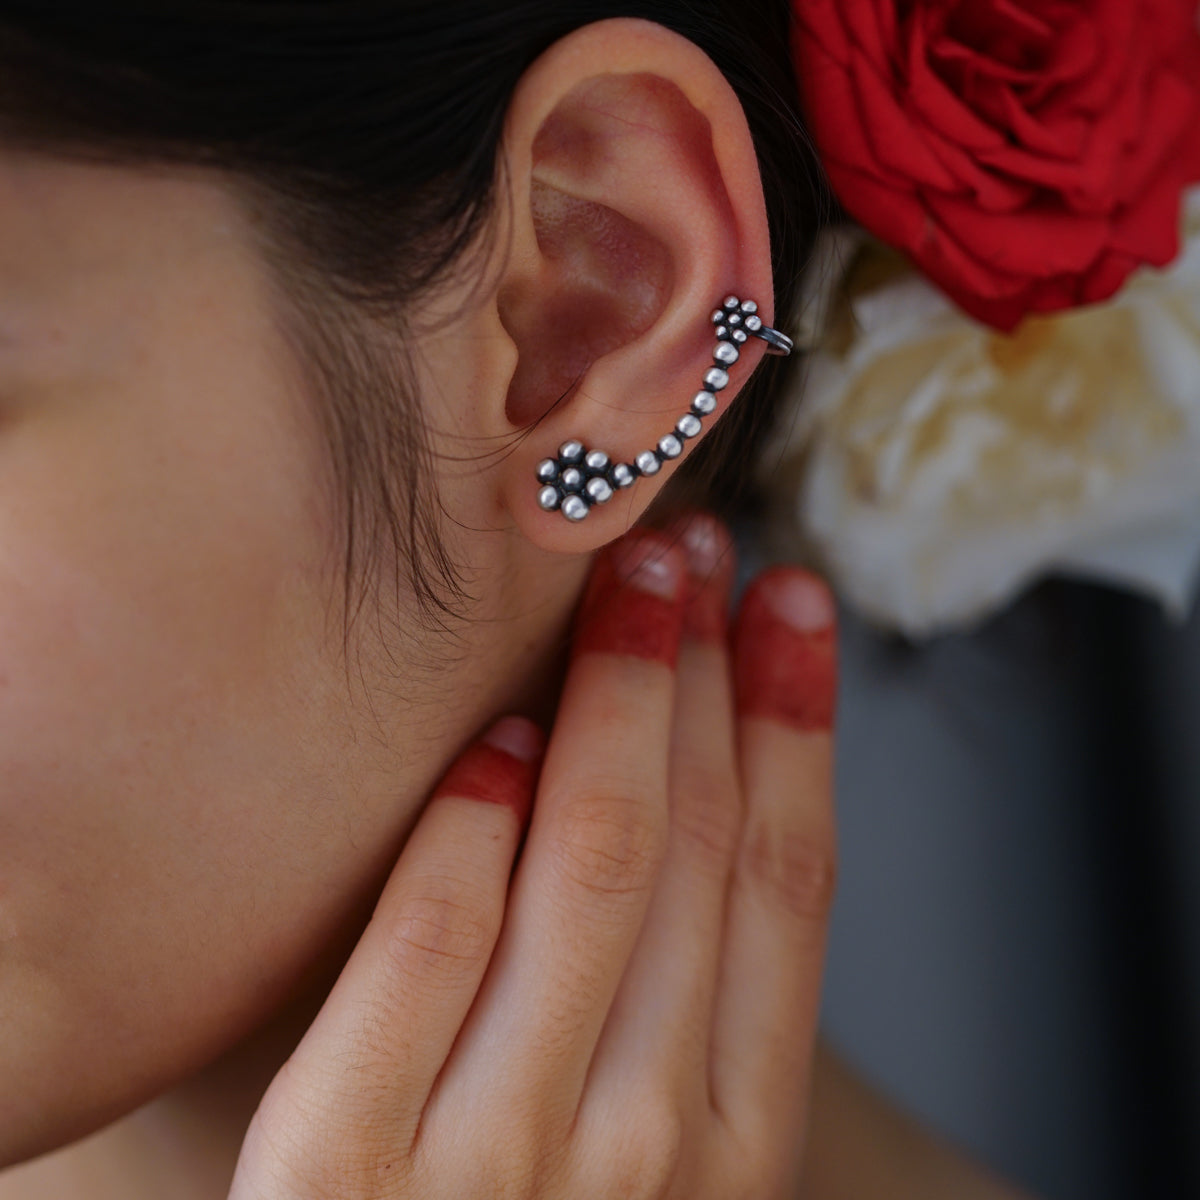 a woman wearing a pair of ear piercings